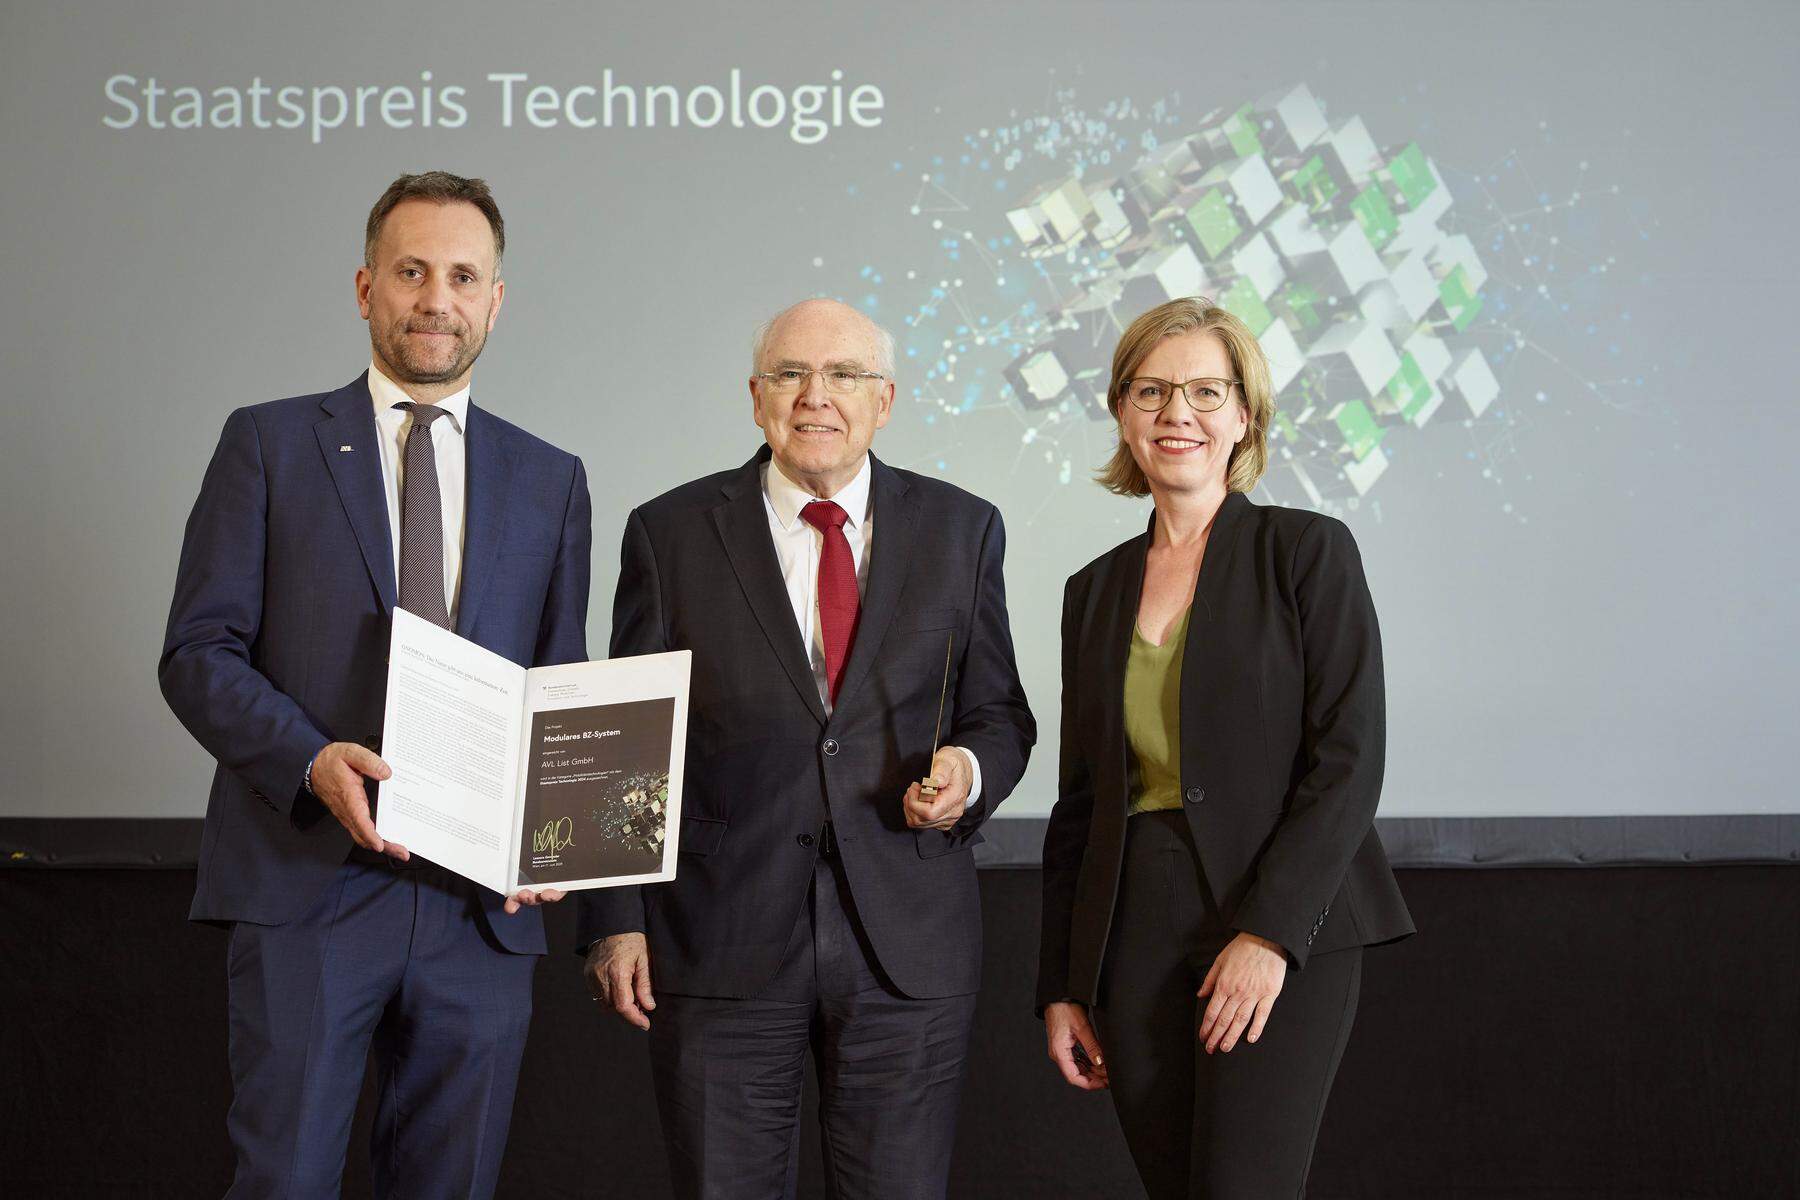 Staatspreis für AVL: Höchste Auszeichnung für das modulare Wasserstoff-Brennstoffzellensystem von AVL